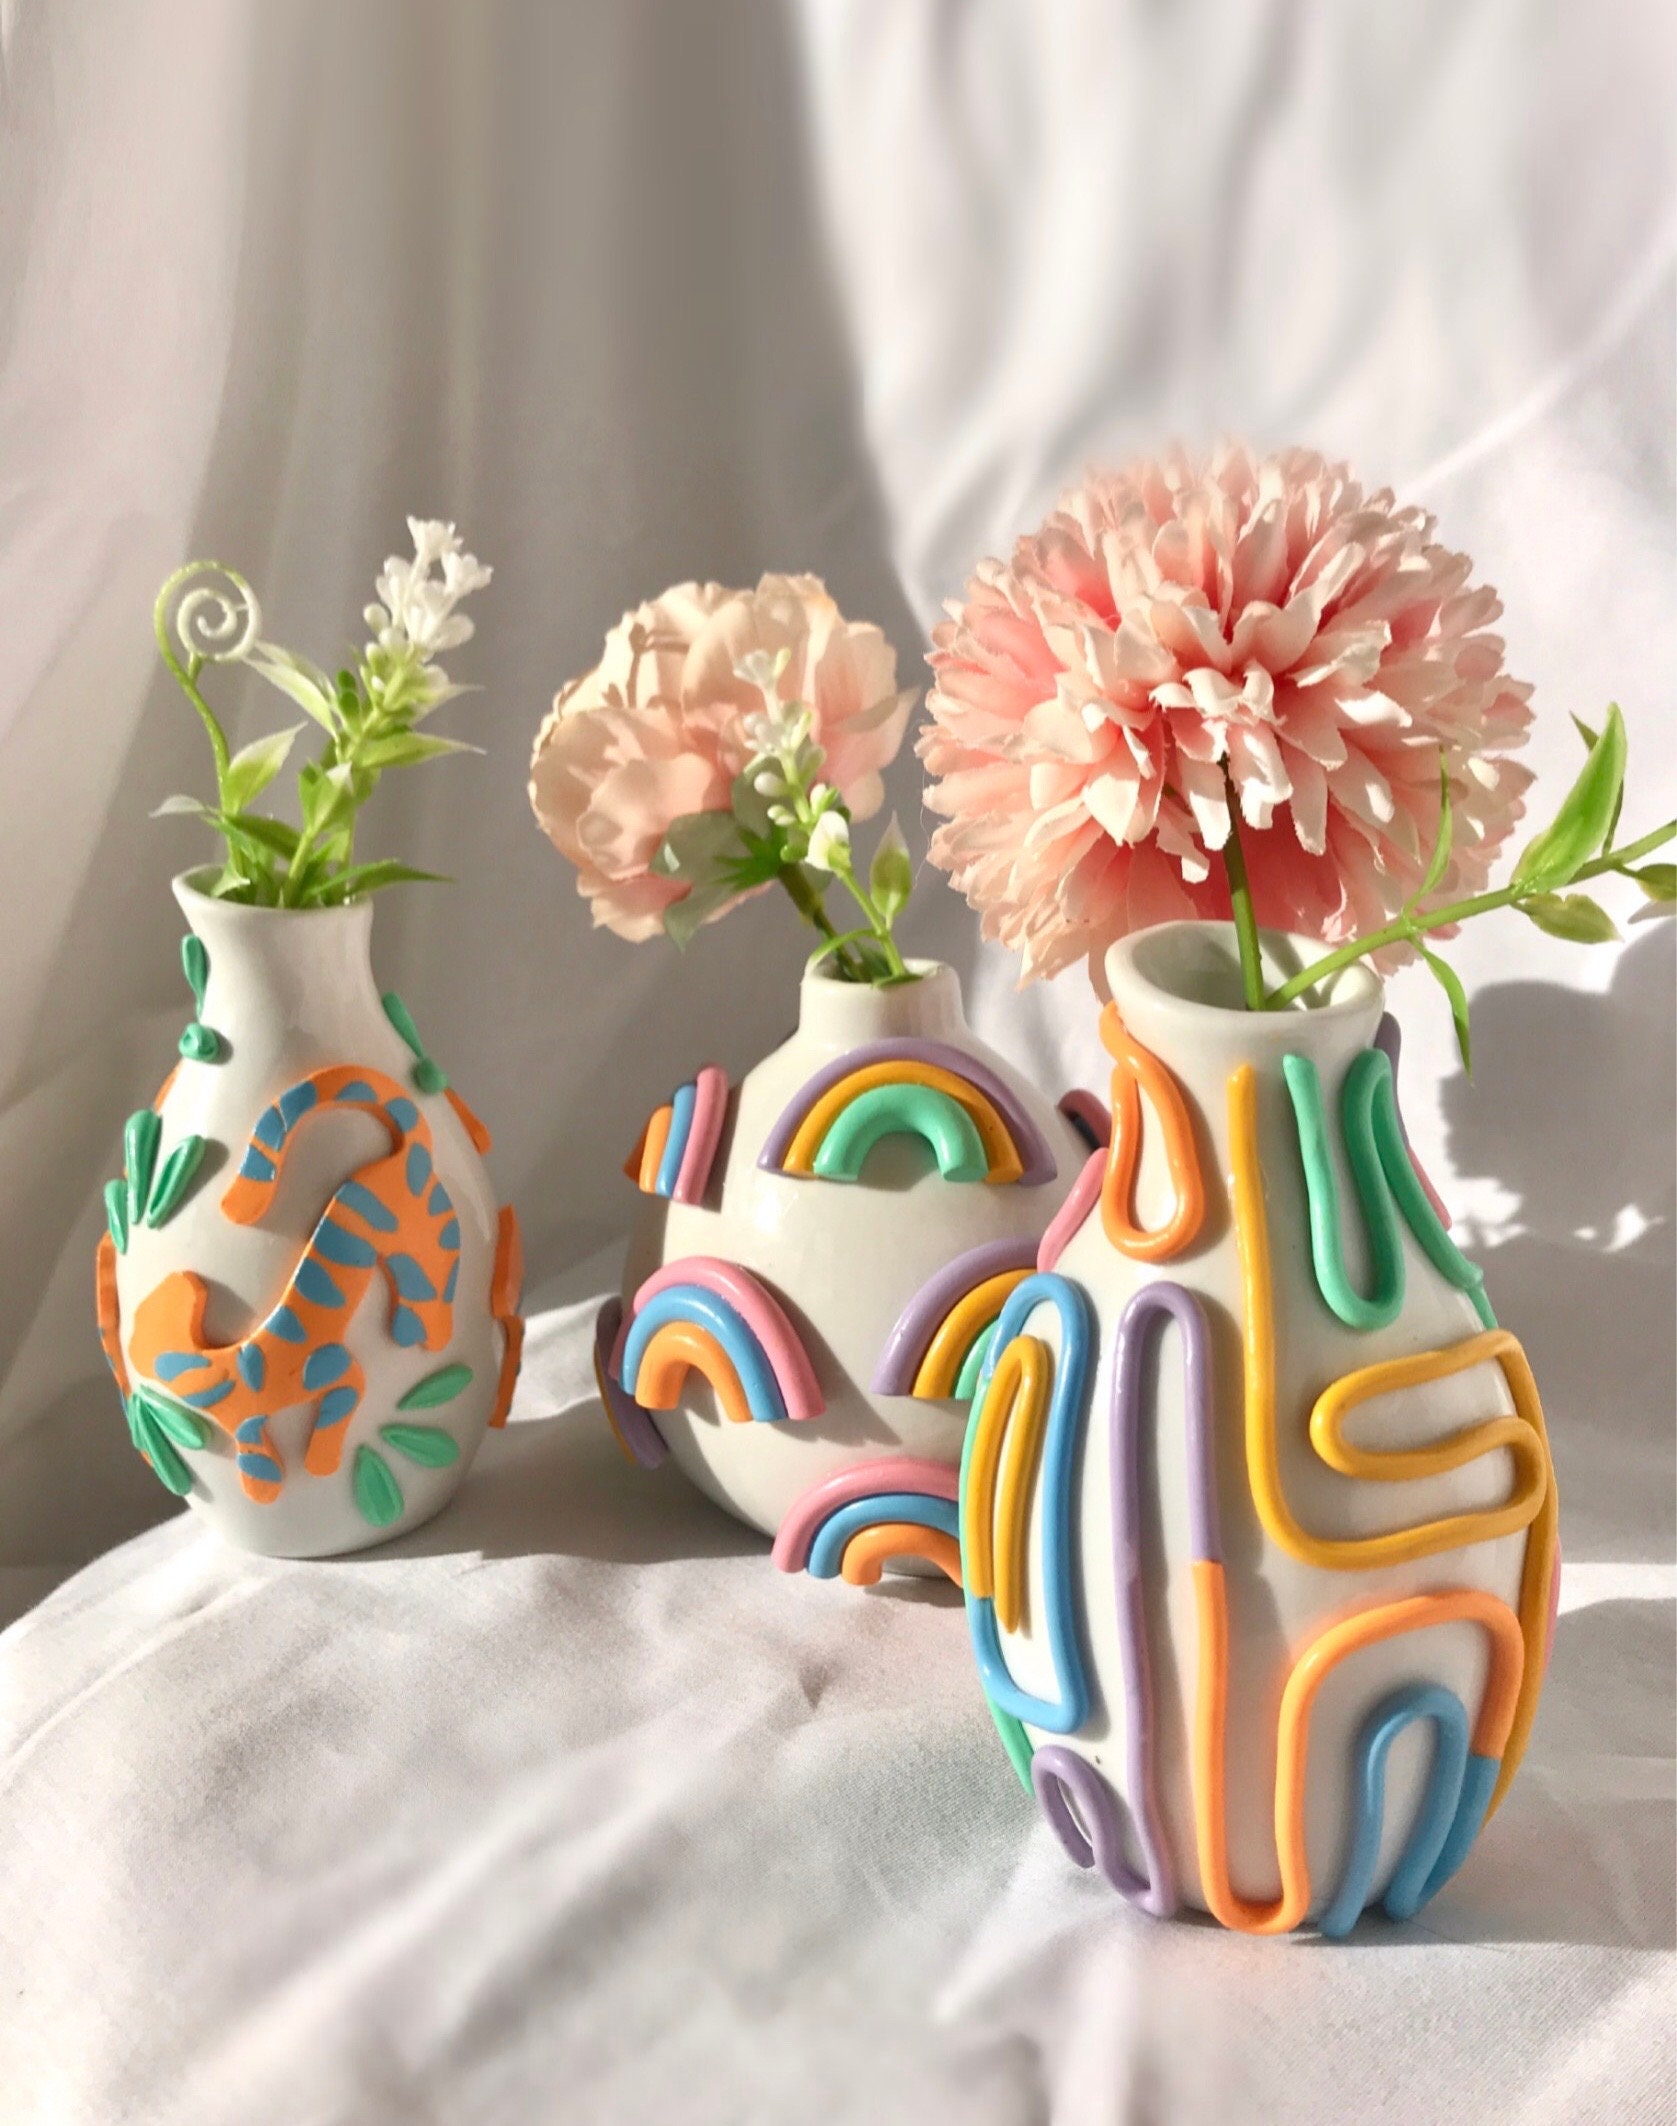 Ceramic Compact Vases Planter Bud Pot Pottery Ornaments Home Decor Pretty Unique 